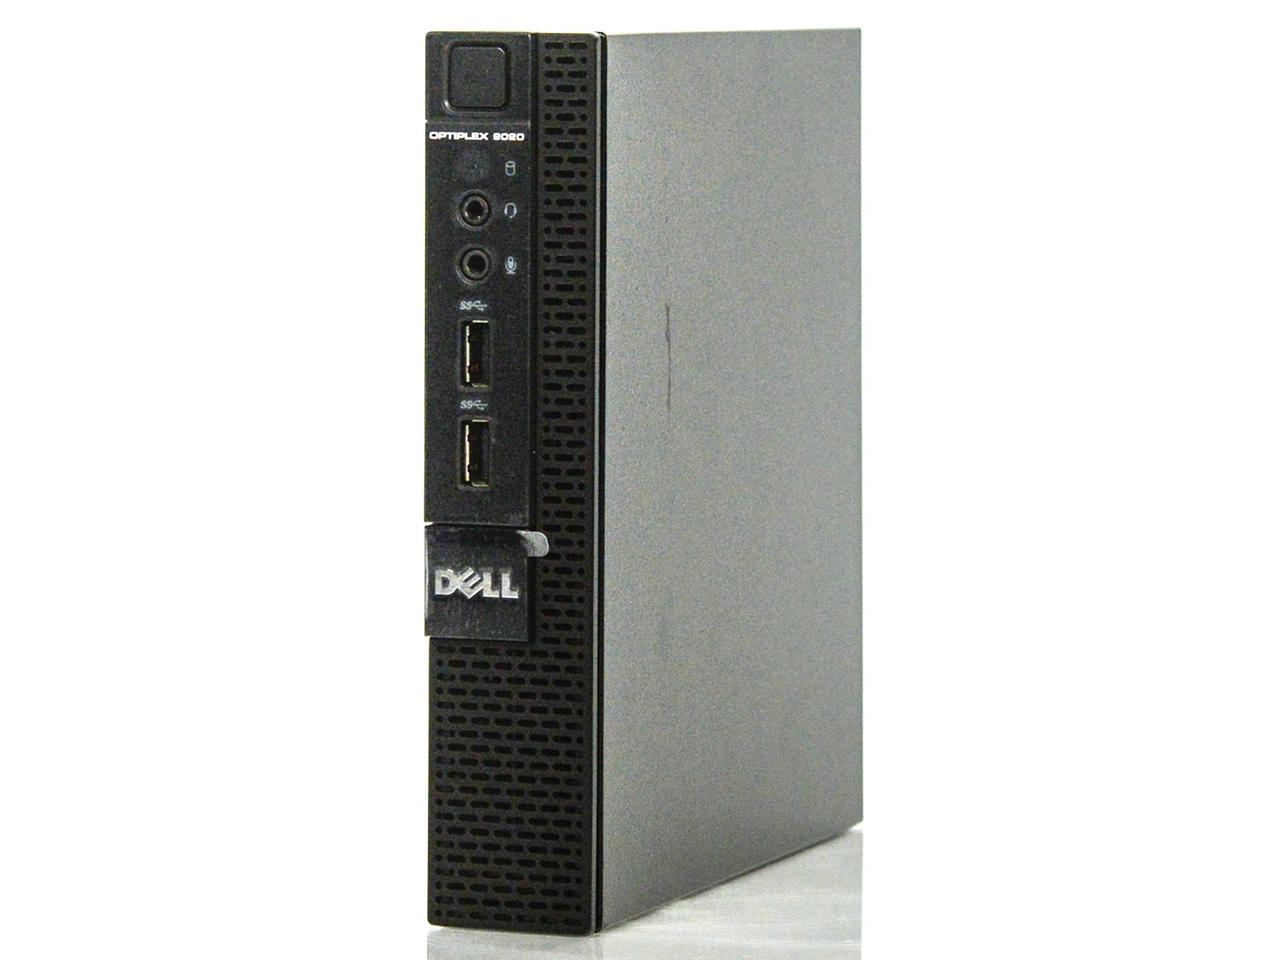 Dell Optiplex 9020 Micro WiFi i5-4590T 2.00GHz 4GB 256GB SSD Win 10 Pro 1 Yr Wty